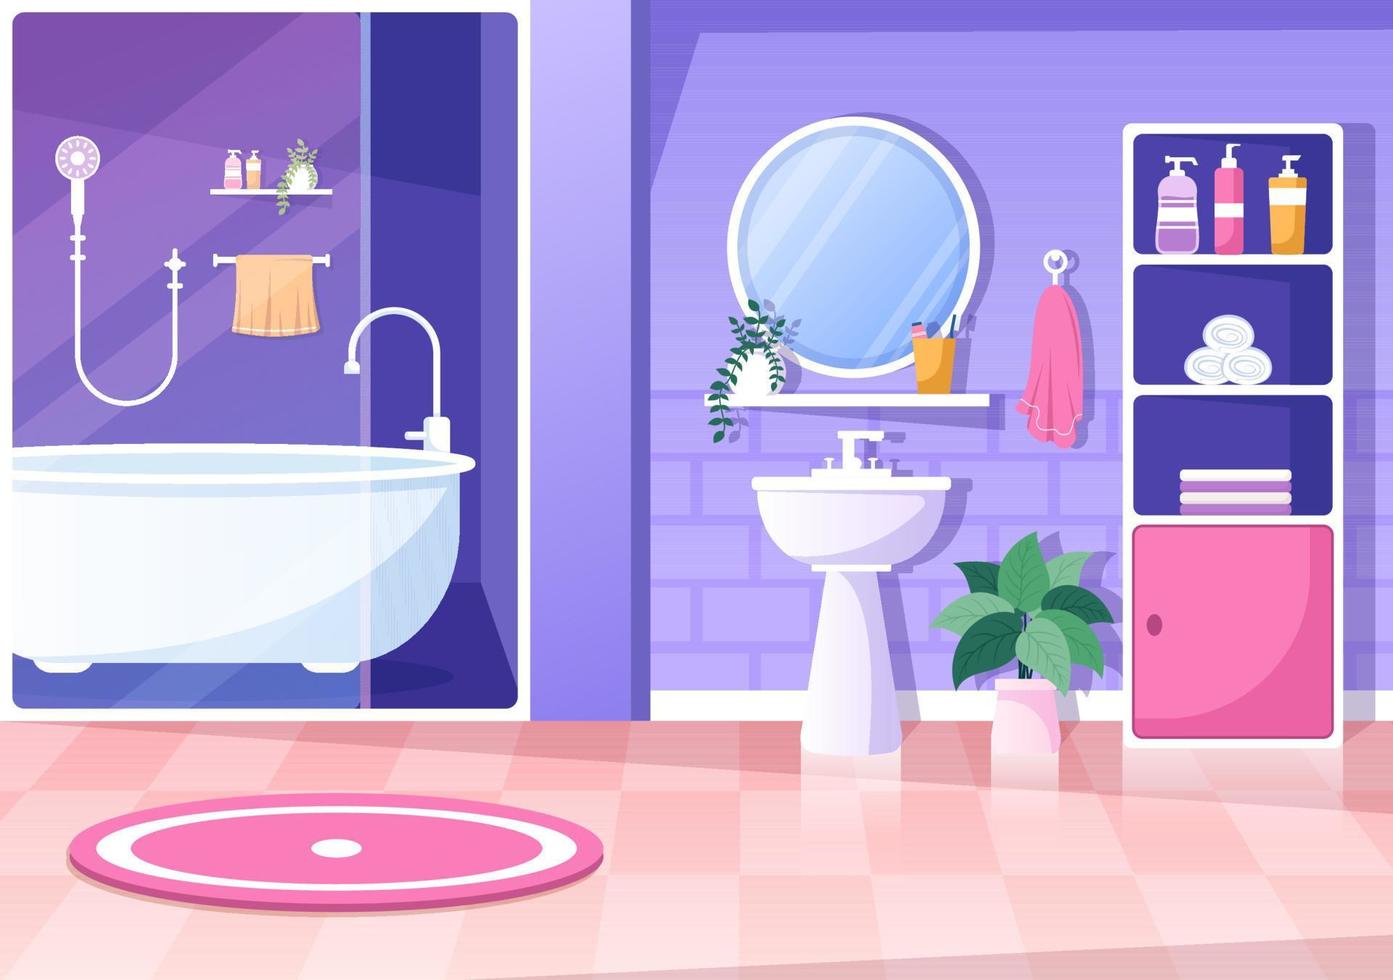 moderna badrumsmöbler interiör bakgrundsillustration med badkar, kran toalett handfat för att duscha och städa upp i platt färgstil vektor